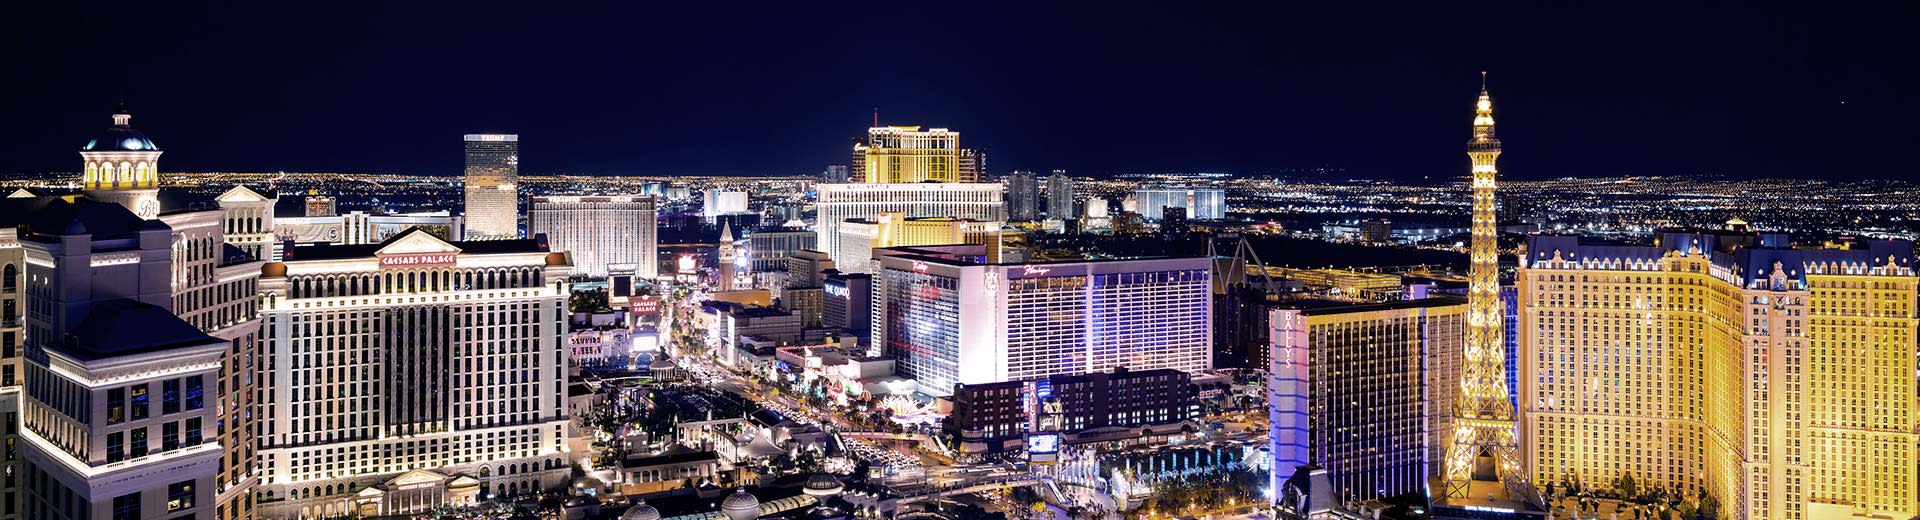 Der berühmte Las Vegas Strip leuchtete nachts mit Toweing Casinos und Straßen voller Autos.